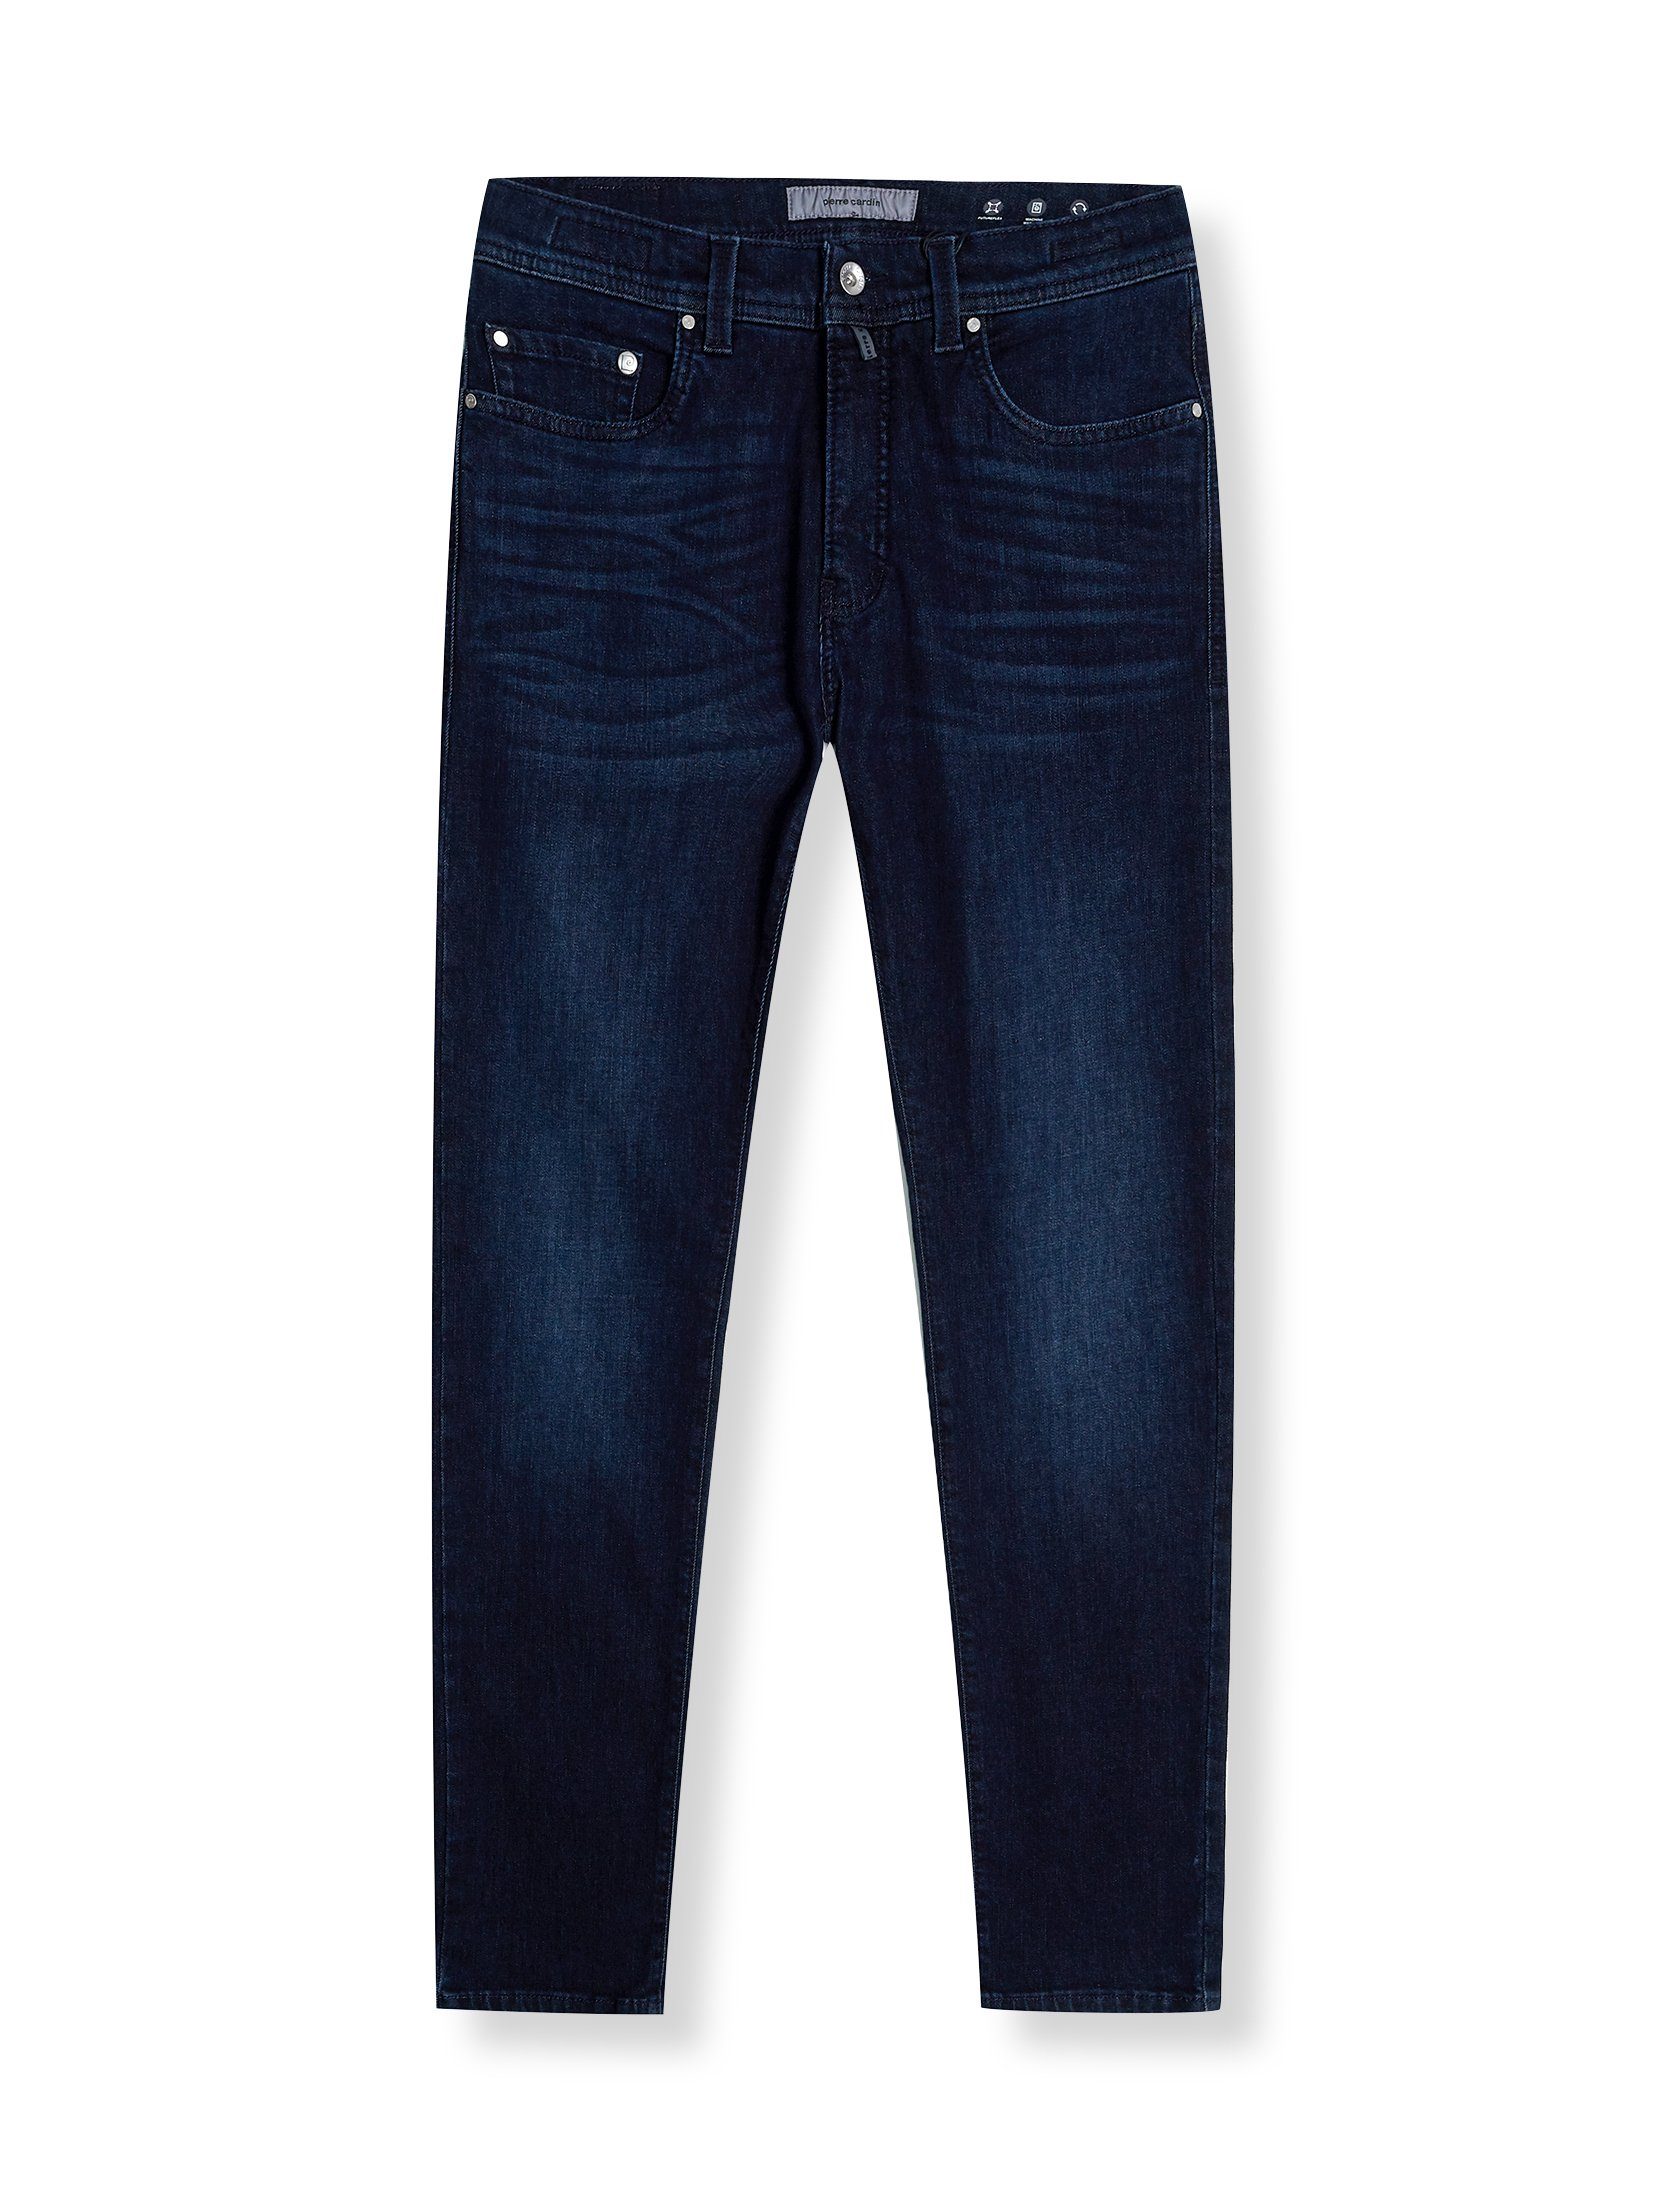 Pierre Cardin 5-Pocket-Jeans dark blue used buffies | Jeans